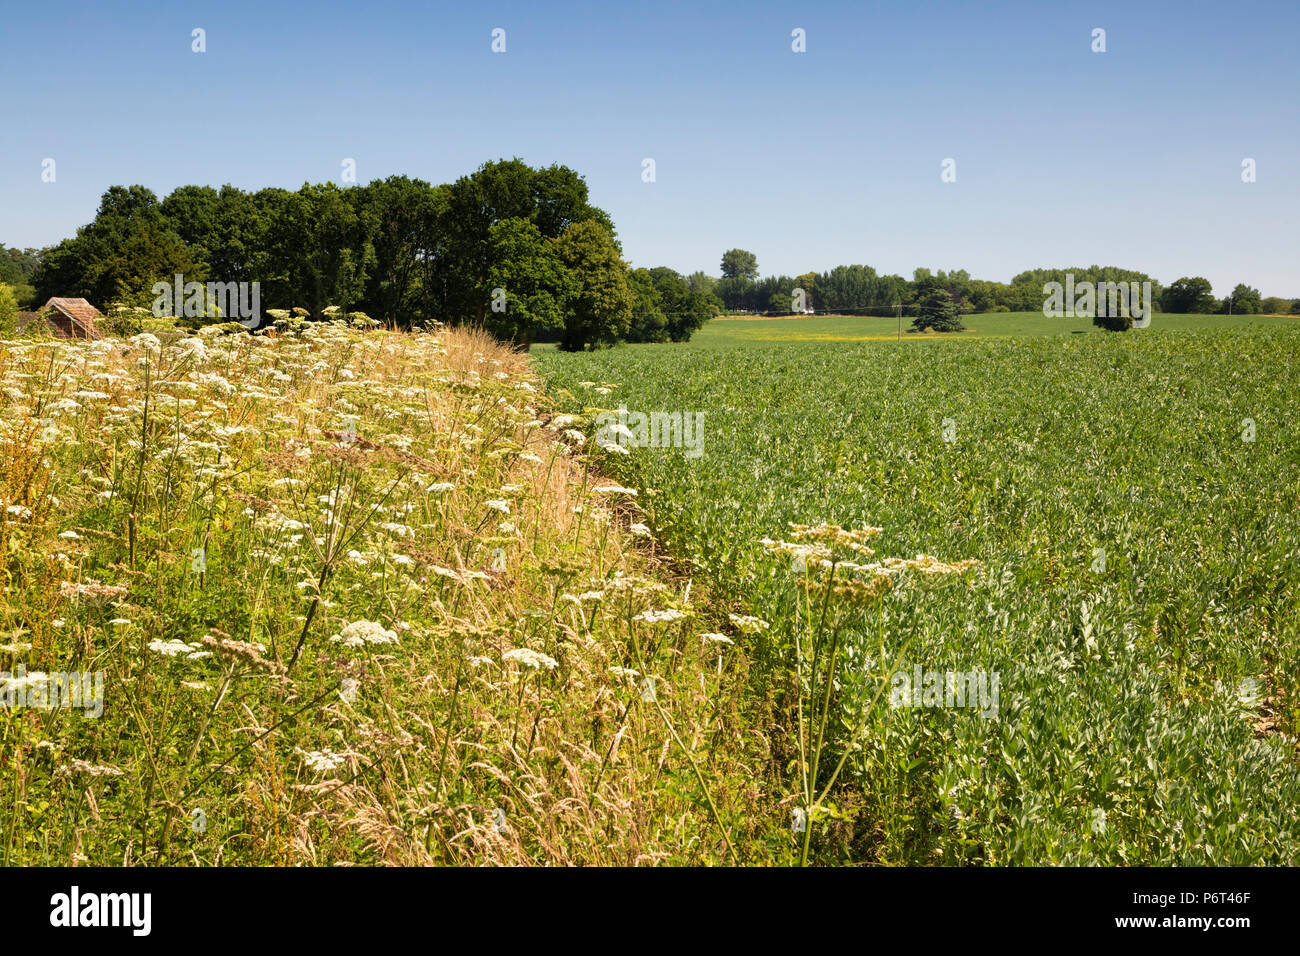 Getreidefeld mit wilde Blume Marge natürliche Flora und Fauna zu fördern, in der Nähe von Newbury, Berkshire, England, Vereinigtes Königreich, Europa Stockfoto